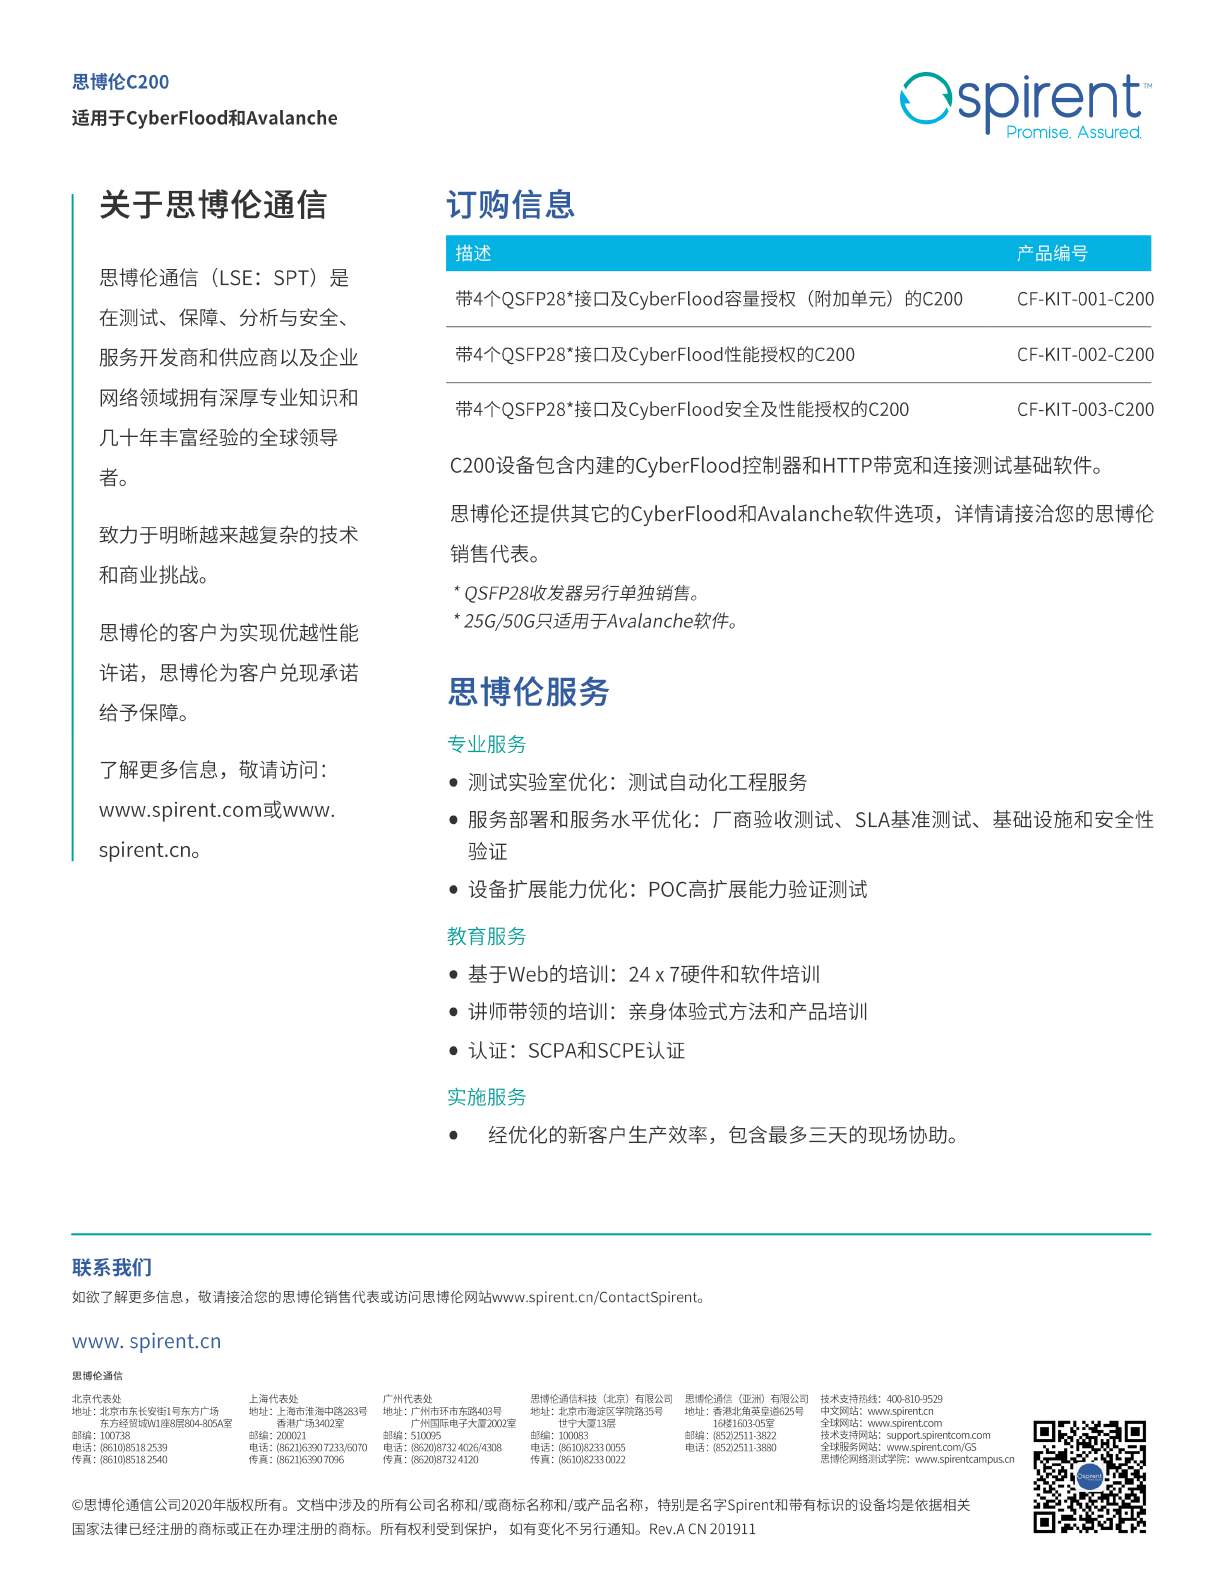 最新版本-C200Appliance_RevA_EN_201911-中文_页面_4.jpg